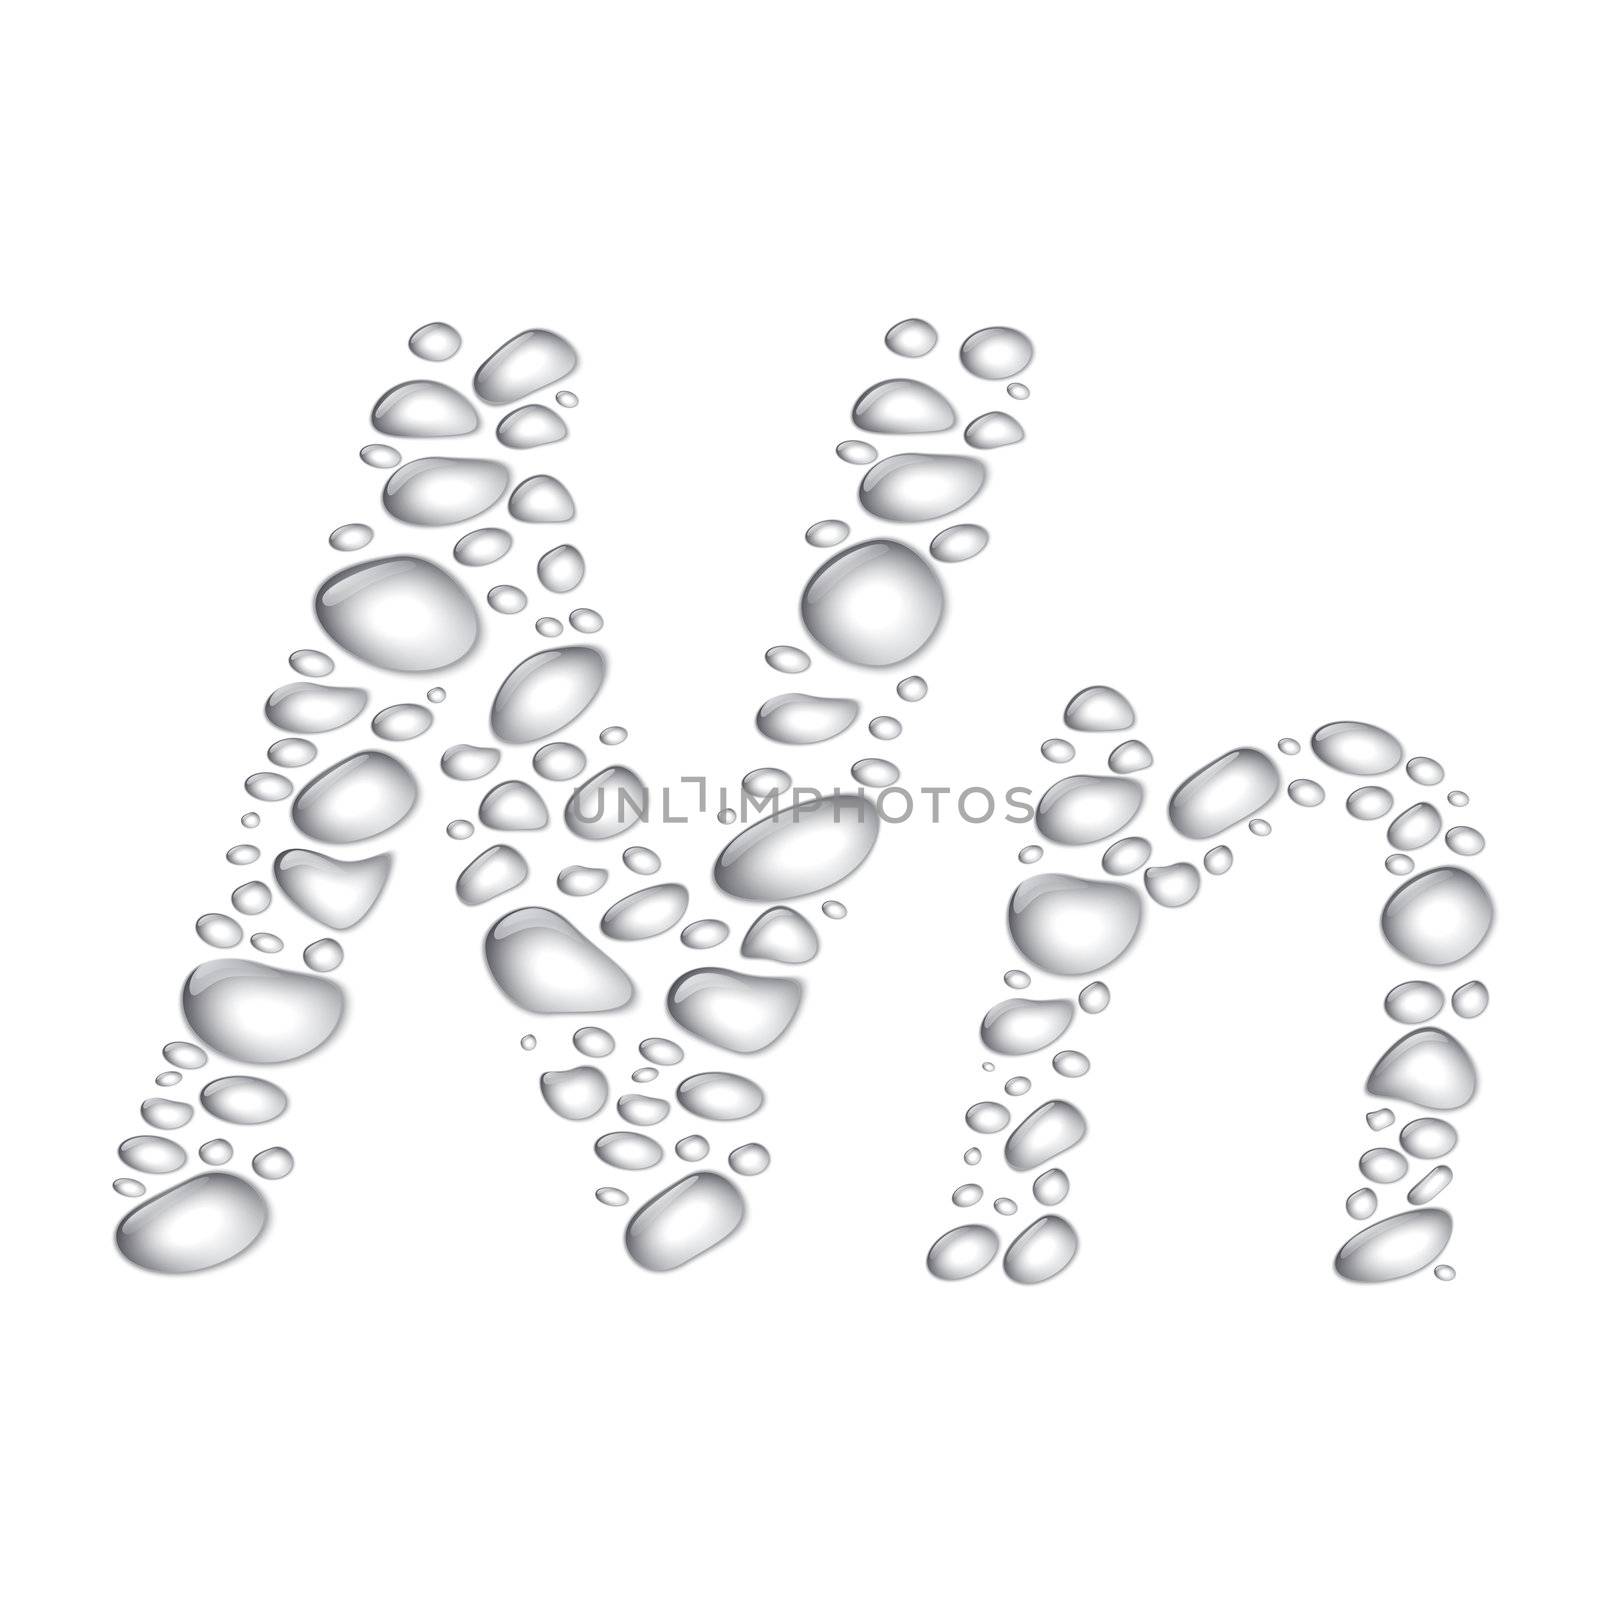 Water drop alphabet, letter Nn